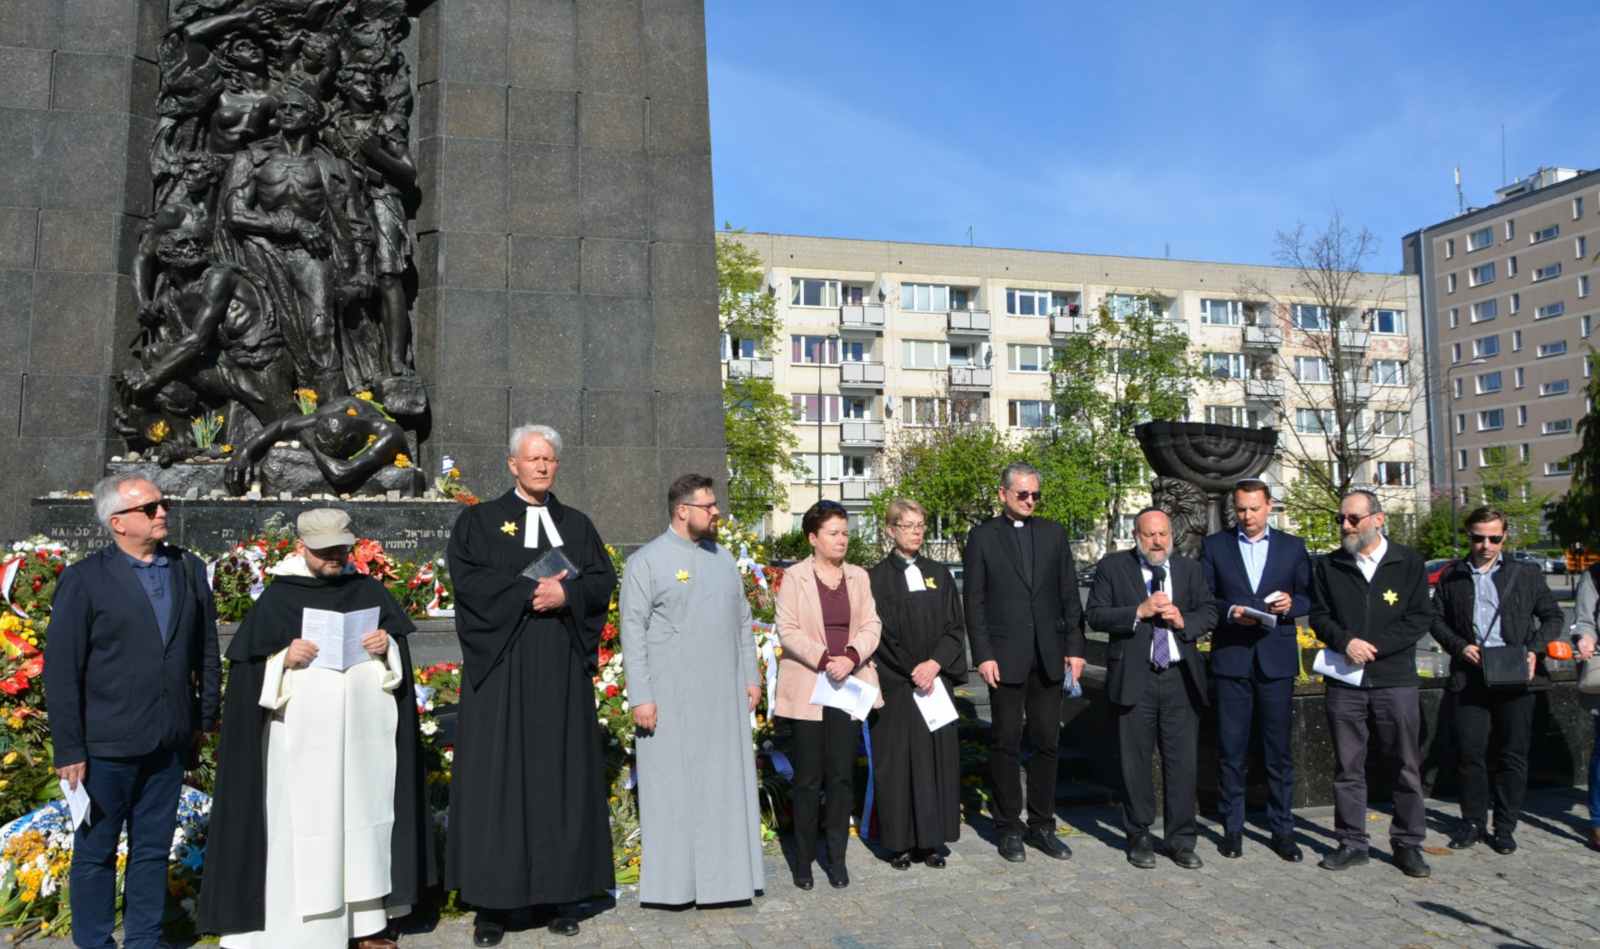 Przy Pomniku Bohaterów Getta za zmarłych modli się rabin Michael Joseph Schudrich,
Marsz Modlitwy, Warszawa, 22 kwietnia 2018